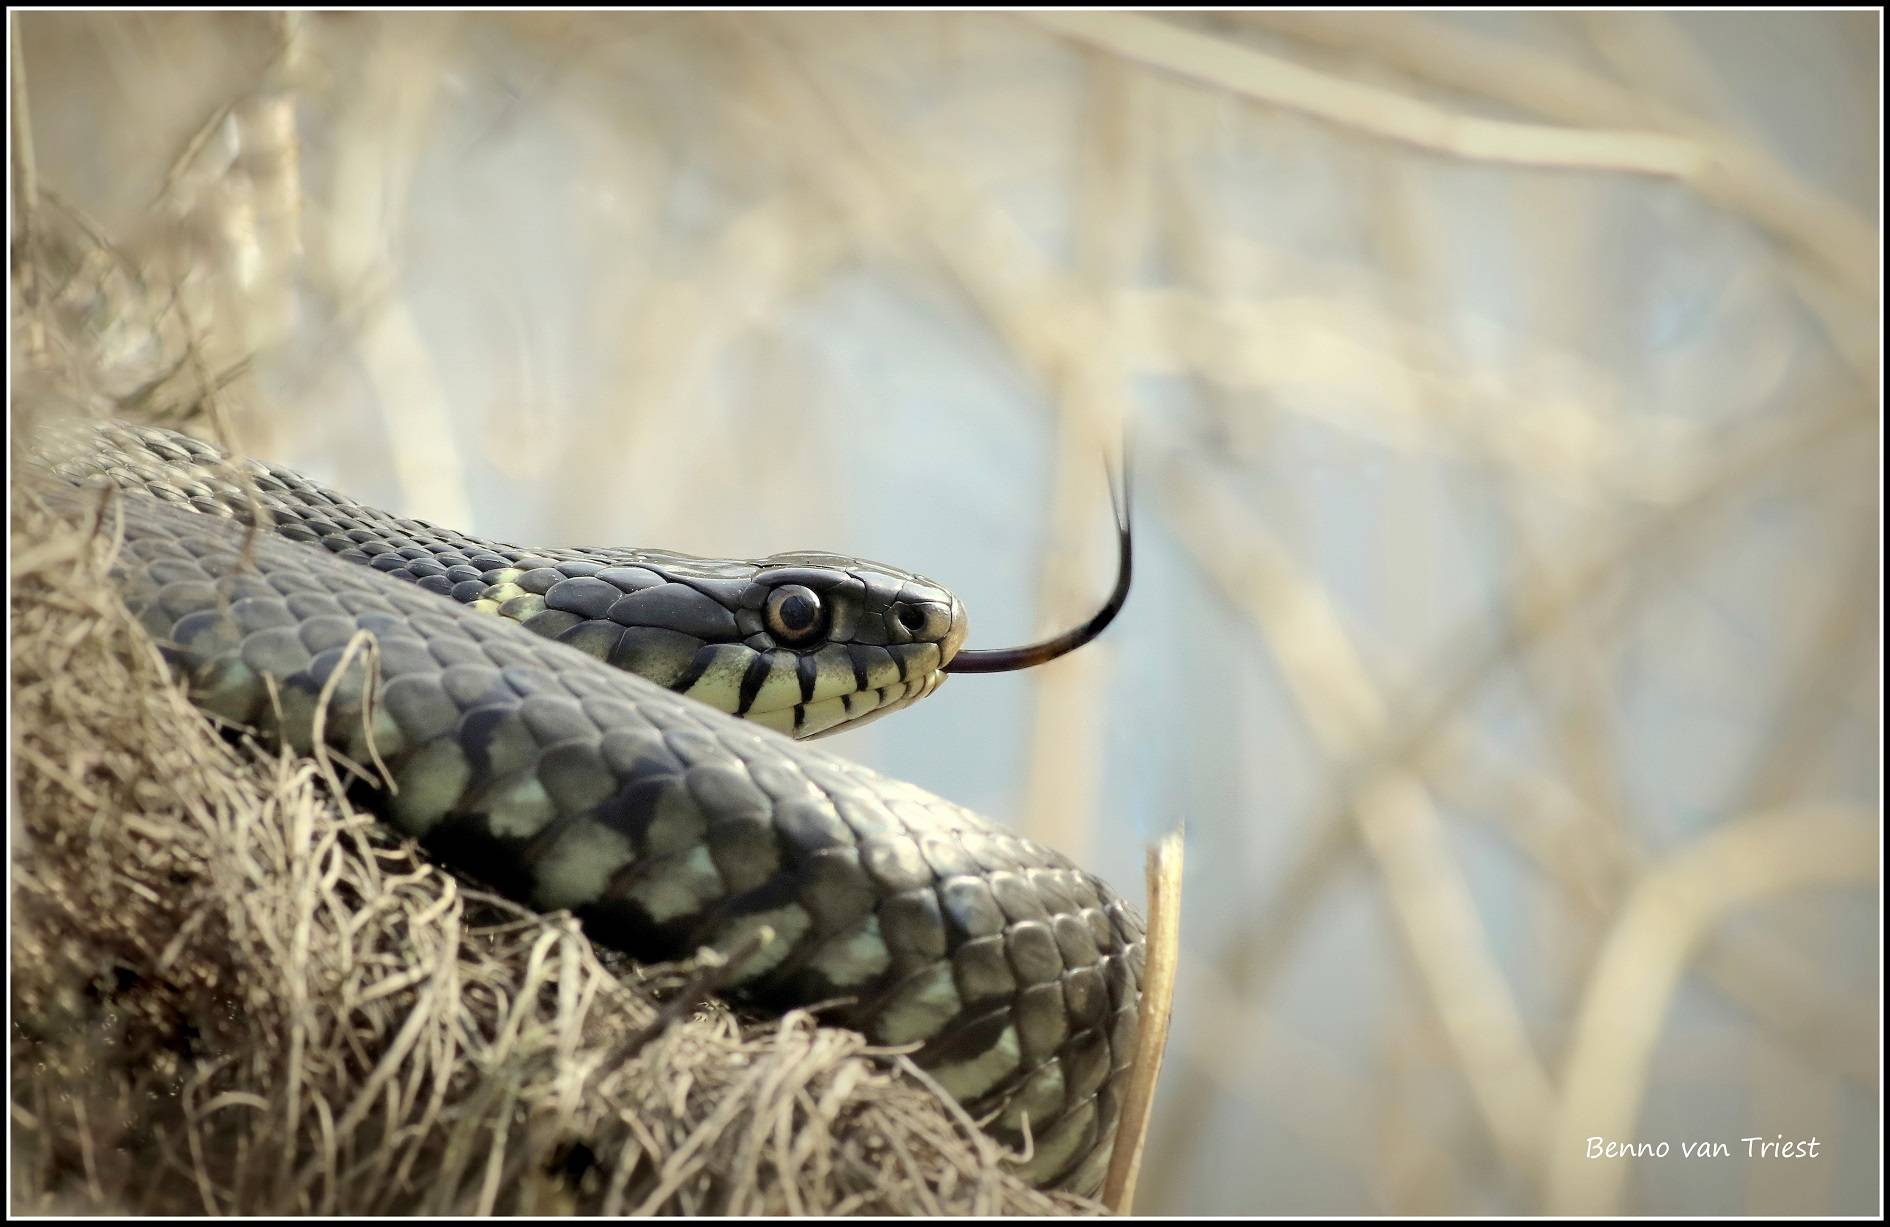 Boswachter Dirk: Slangen in de Gooise natuur